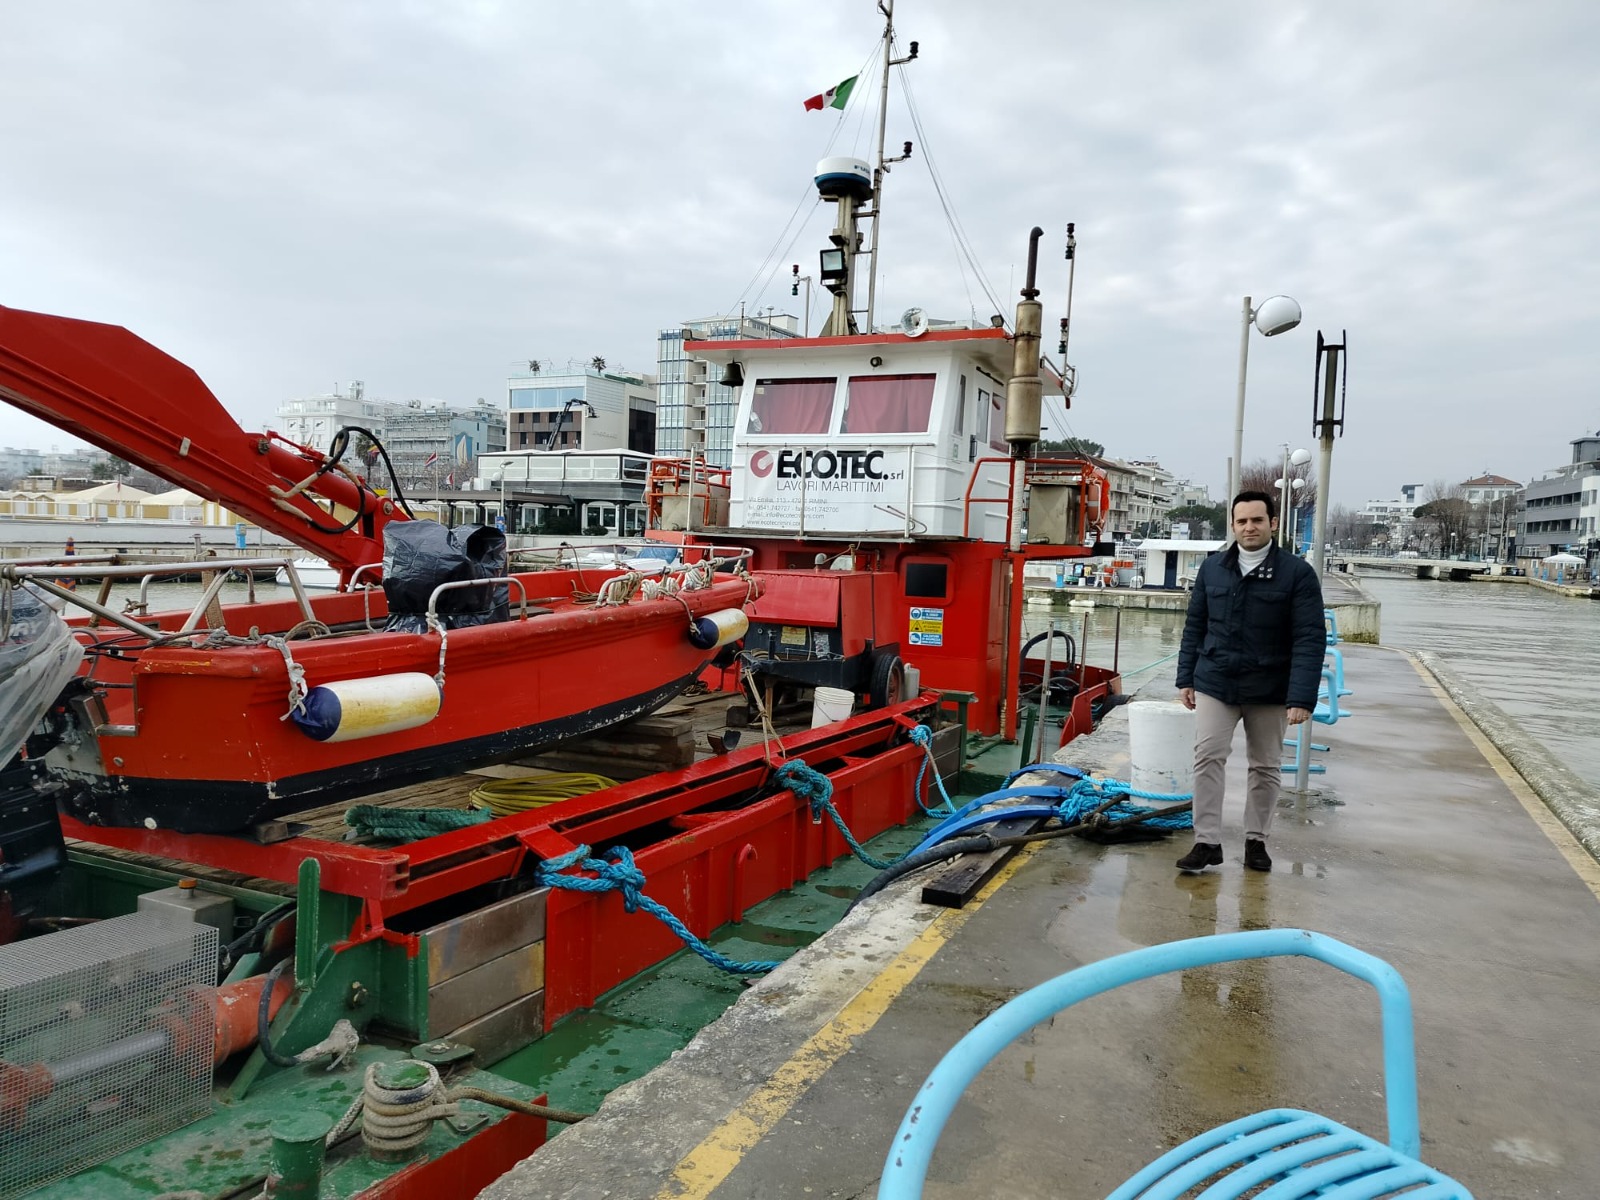 Dragaggio dell’area portuale di Riccione: fondali puliti entro la fine di maggio